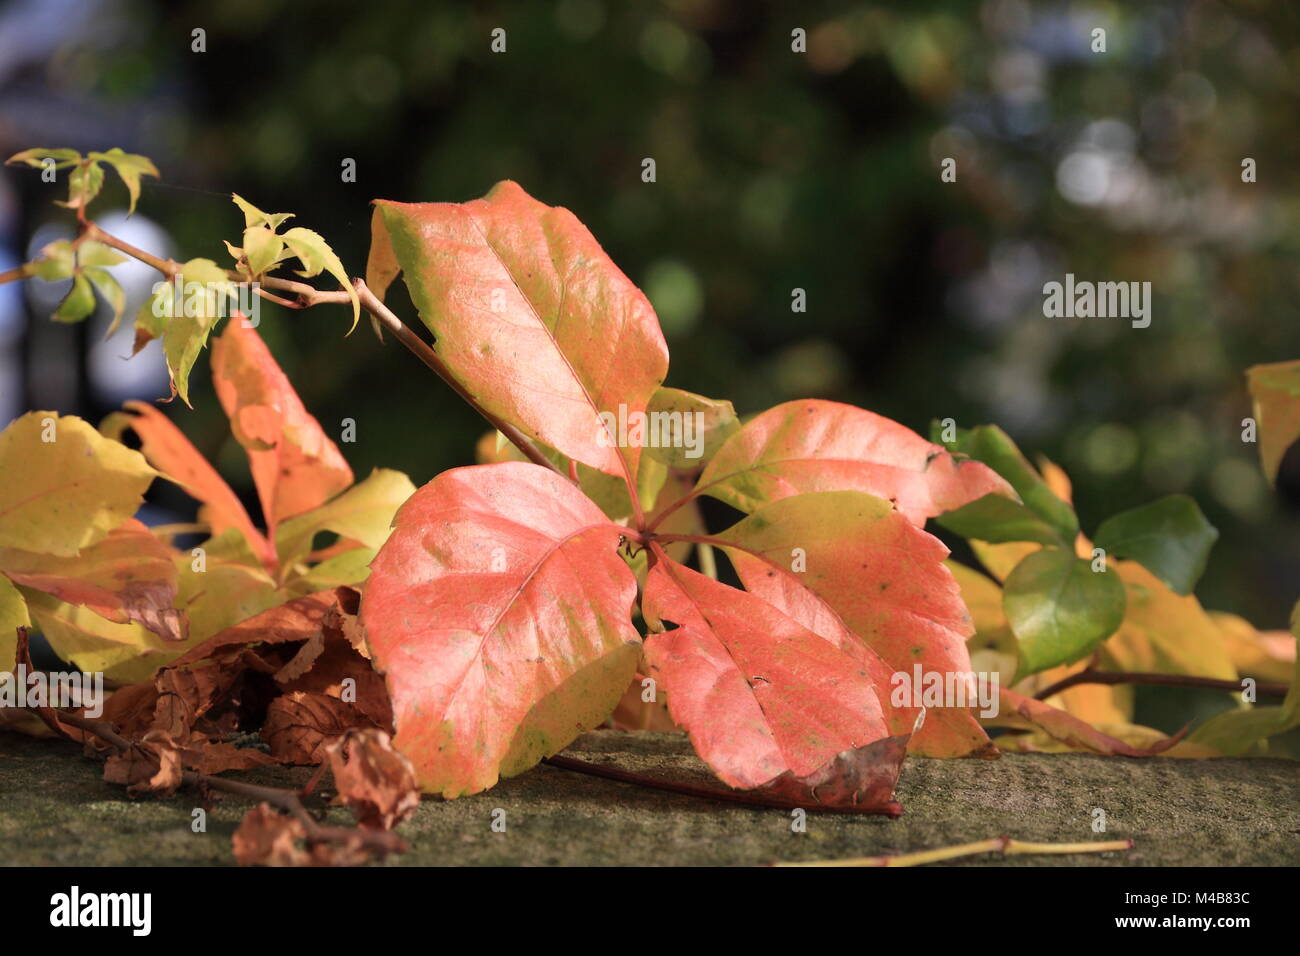 Red vine leaves sunlit Stock Photo